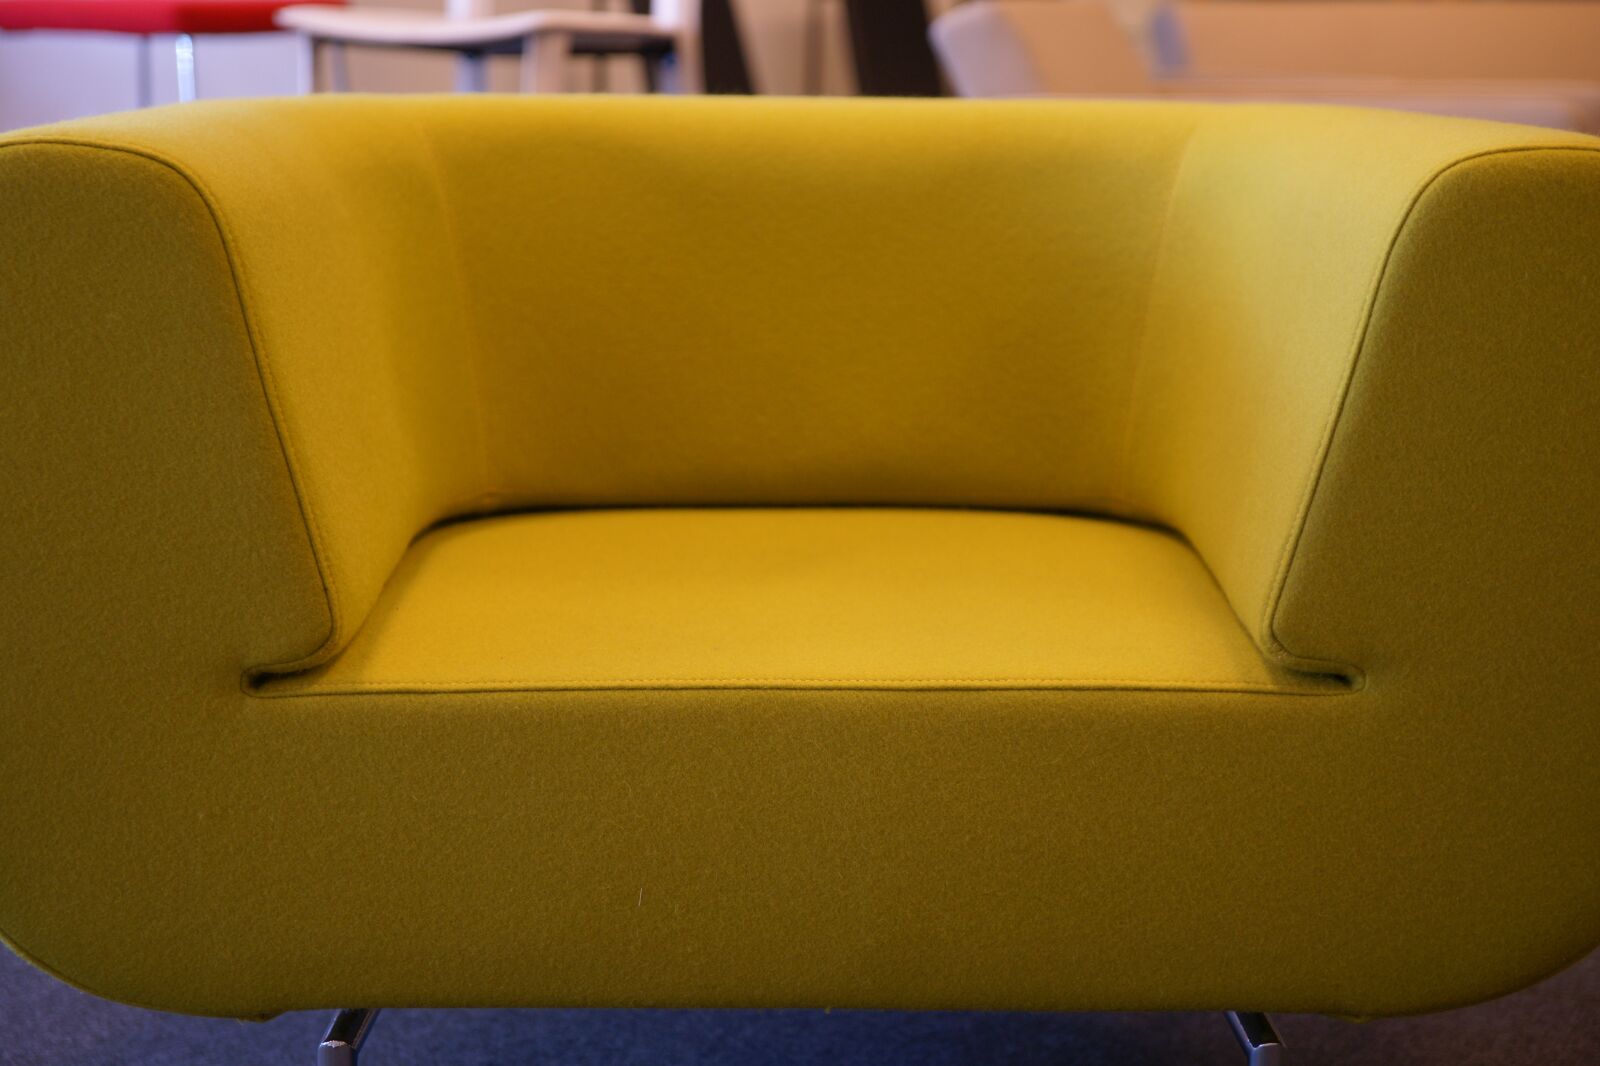 Sony Alpha DSLR-A850 sample photo. Armchair, chair, yellow photography